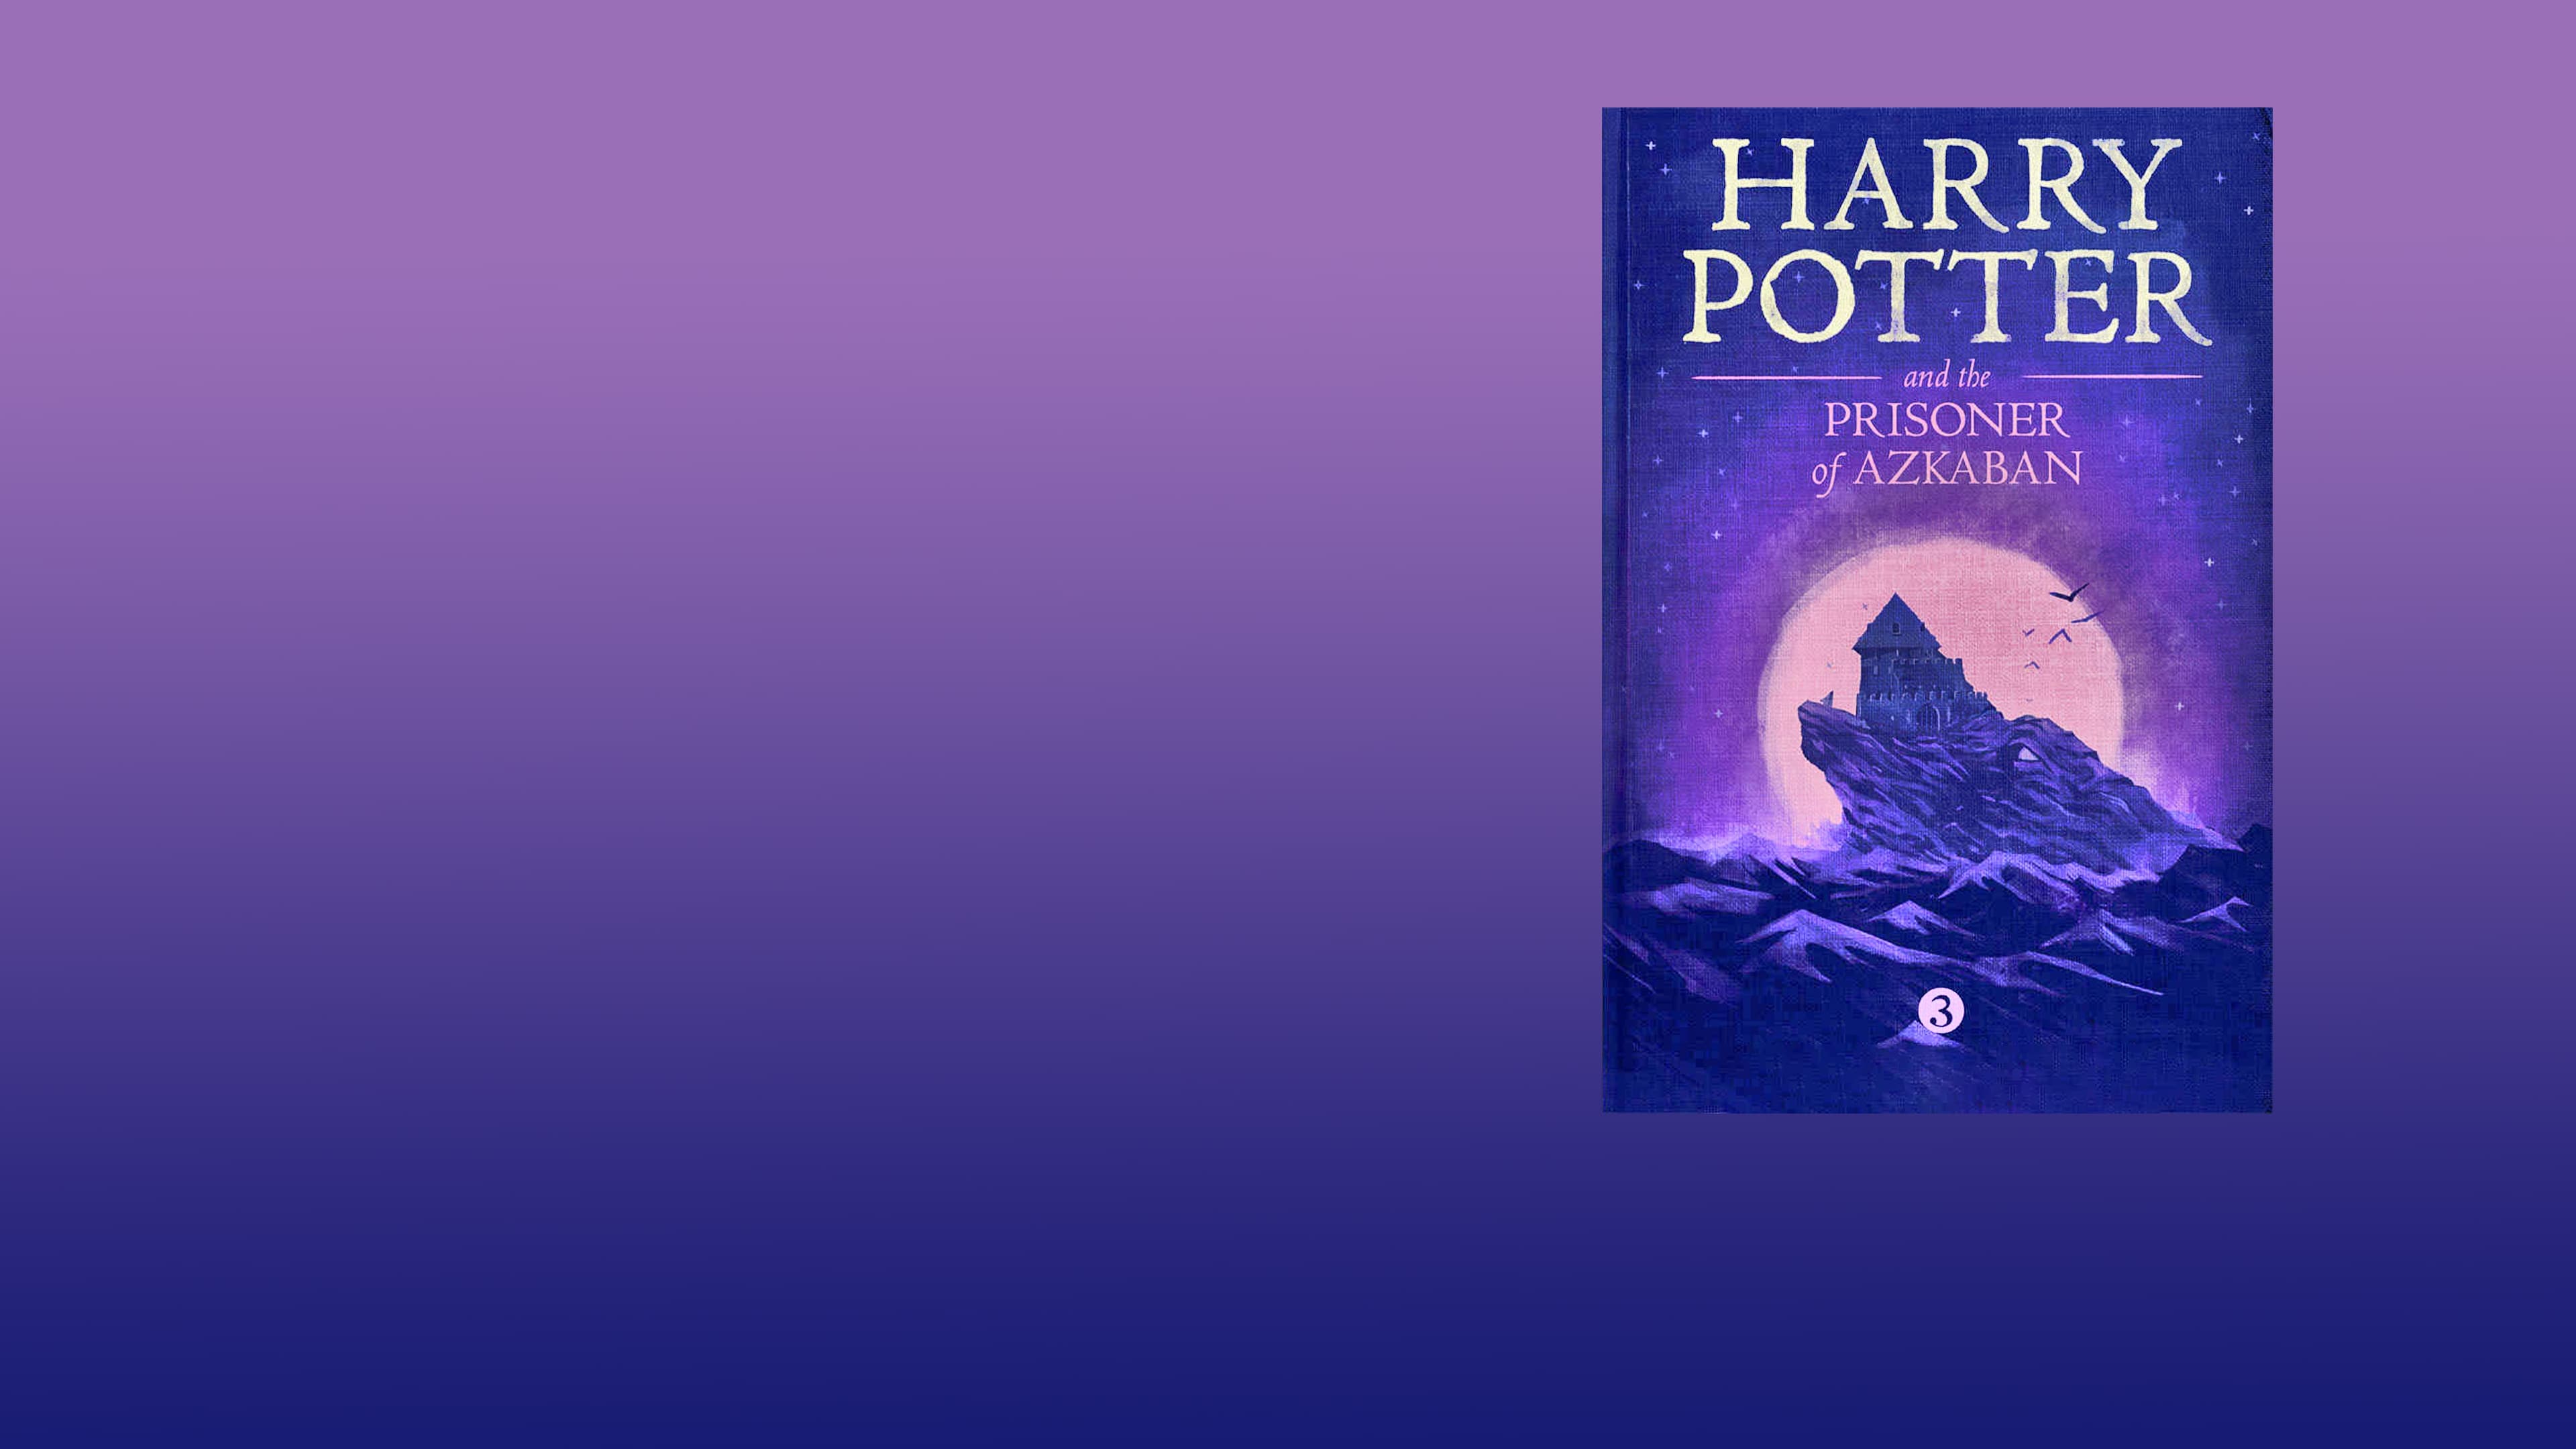 Harry Potter og fangen fra Azkaban (2004)